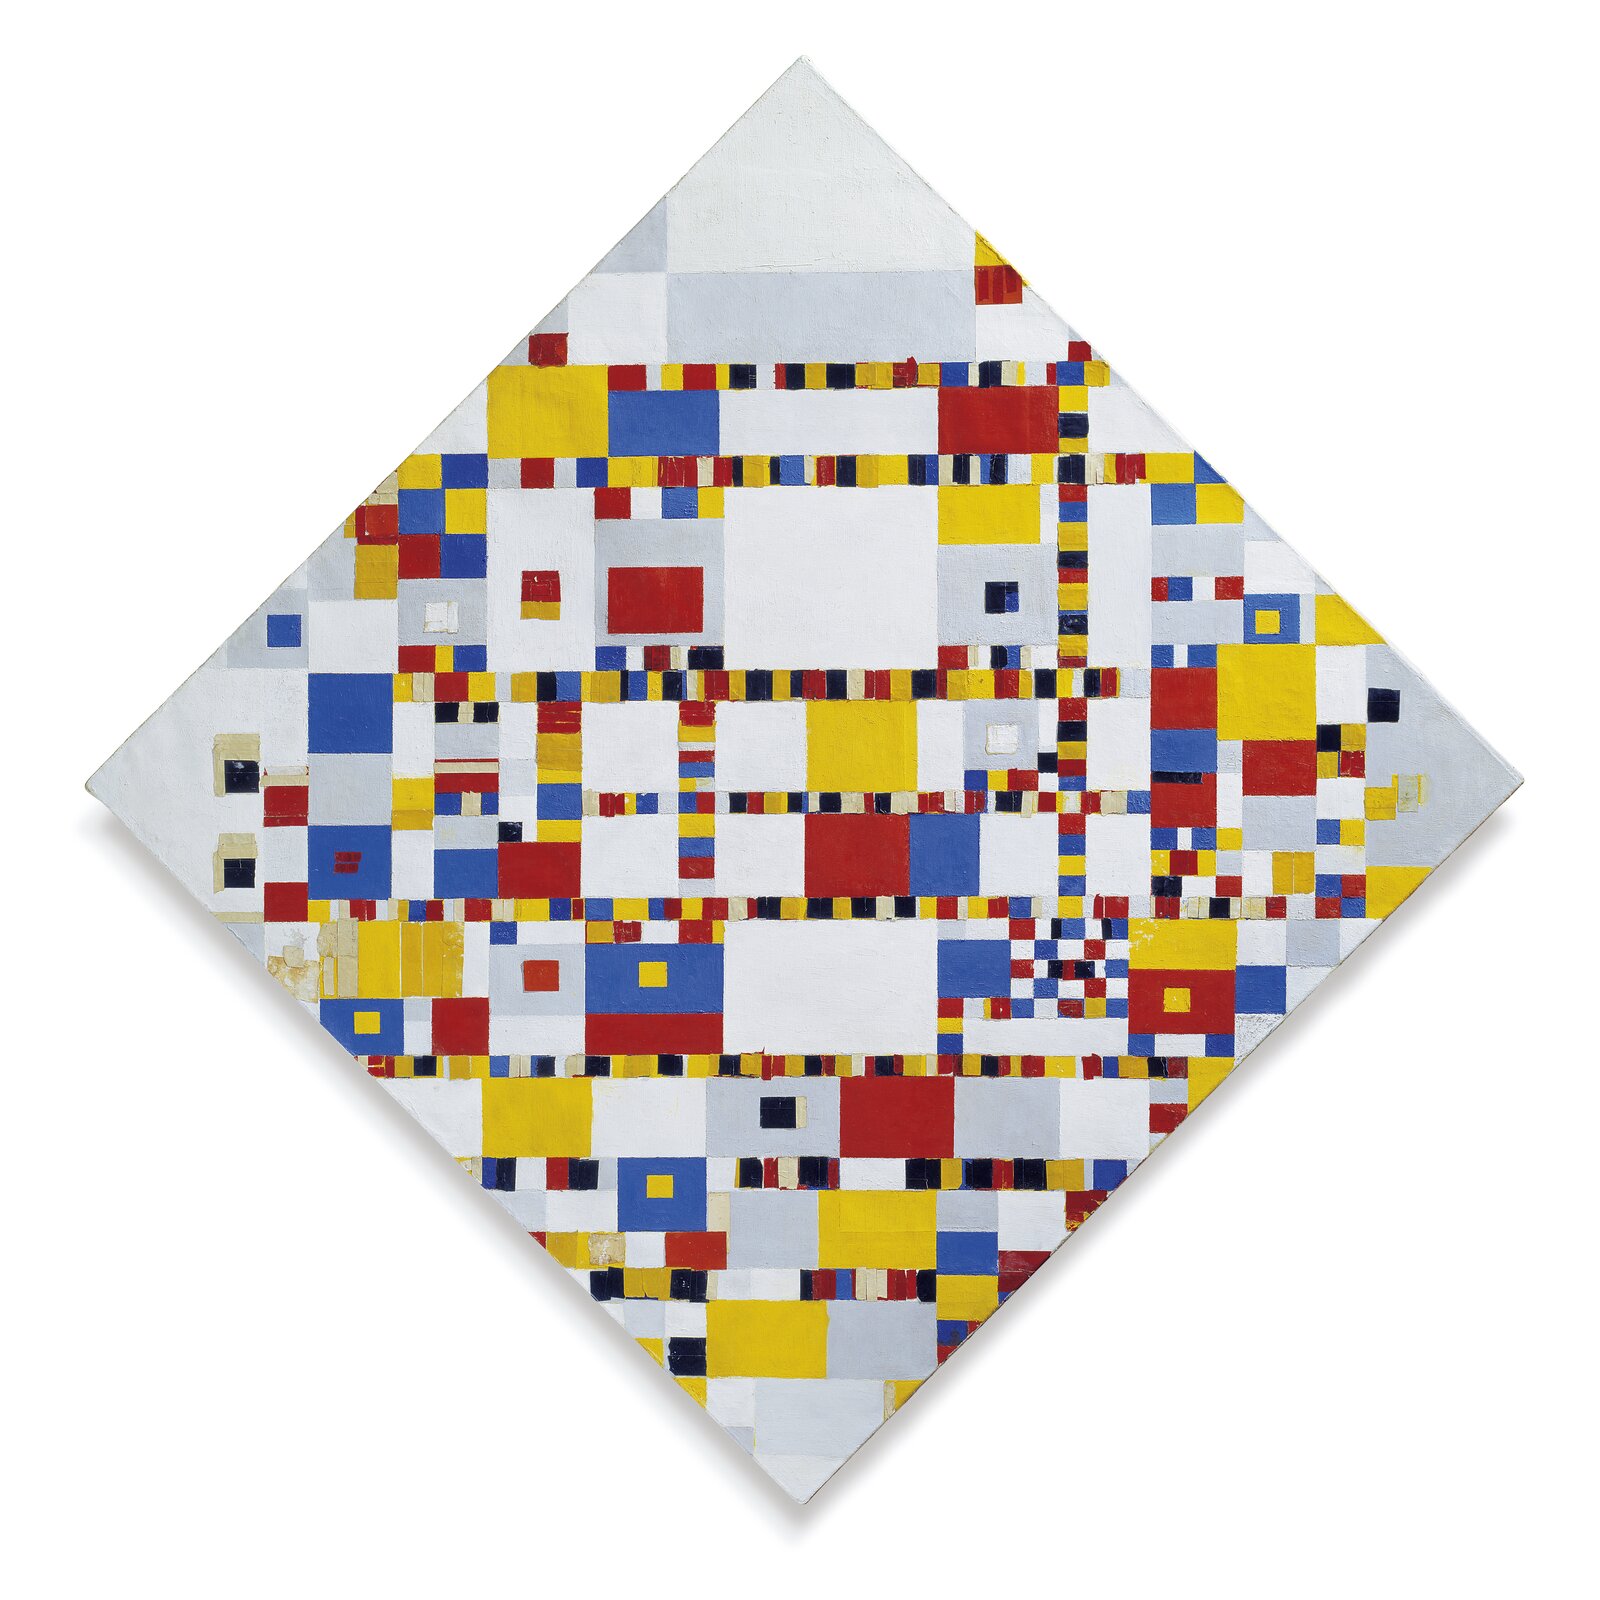 Ilustracja przedstawia obraz Pieta Mondriana pt. „Victory Boogie Woogie”. Płótno jest podzielone na dużą liczbę kwadratów. Artysta wykorzystał głównie barwę żółtą, niebieską i czerwoną. 